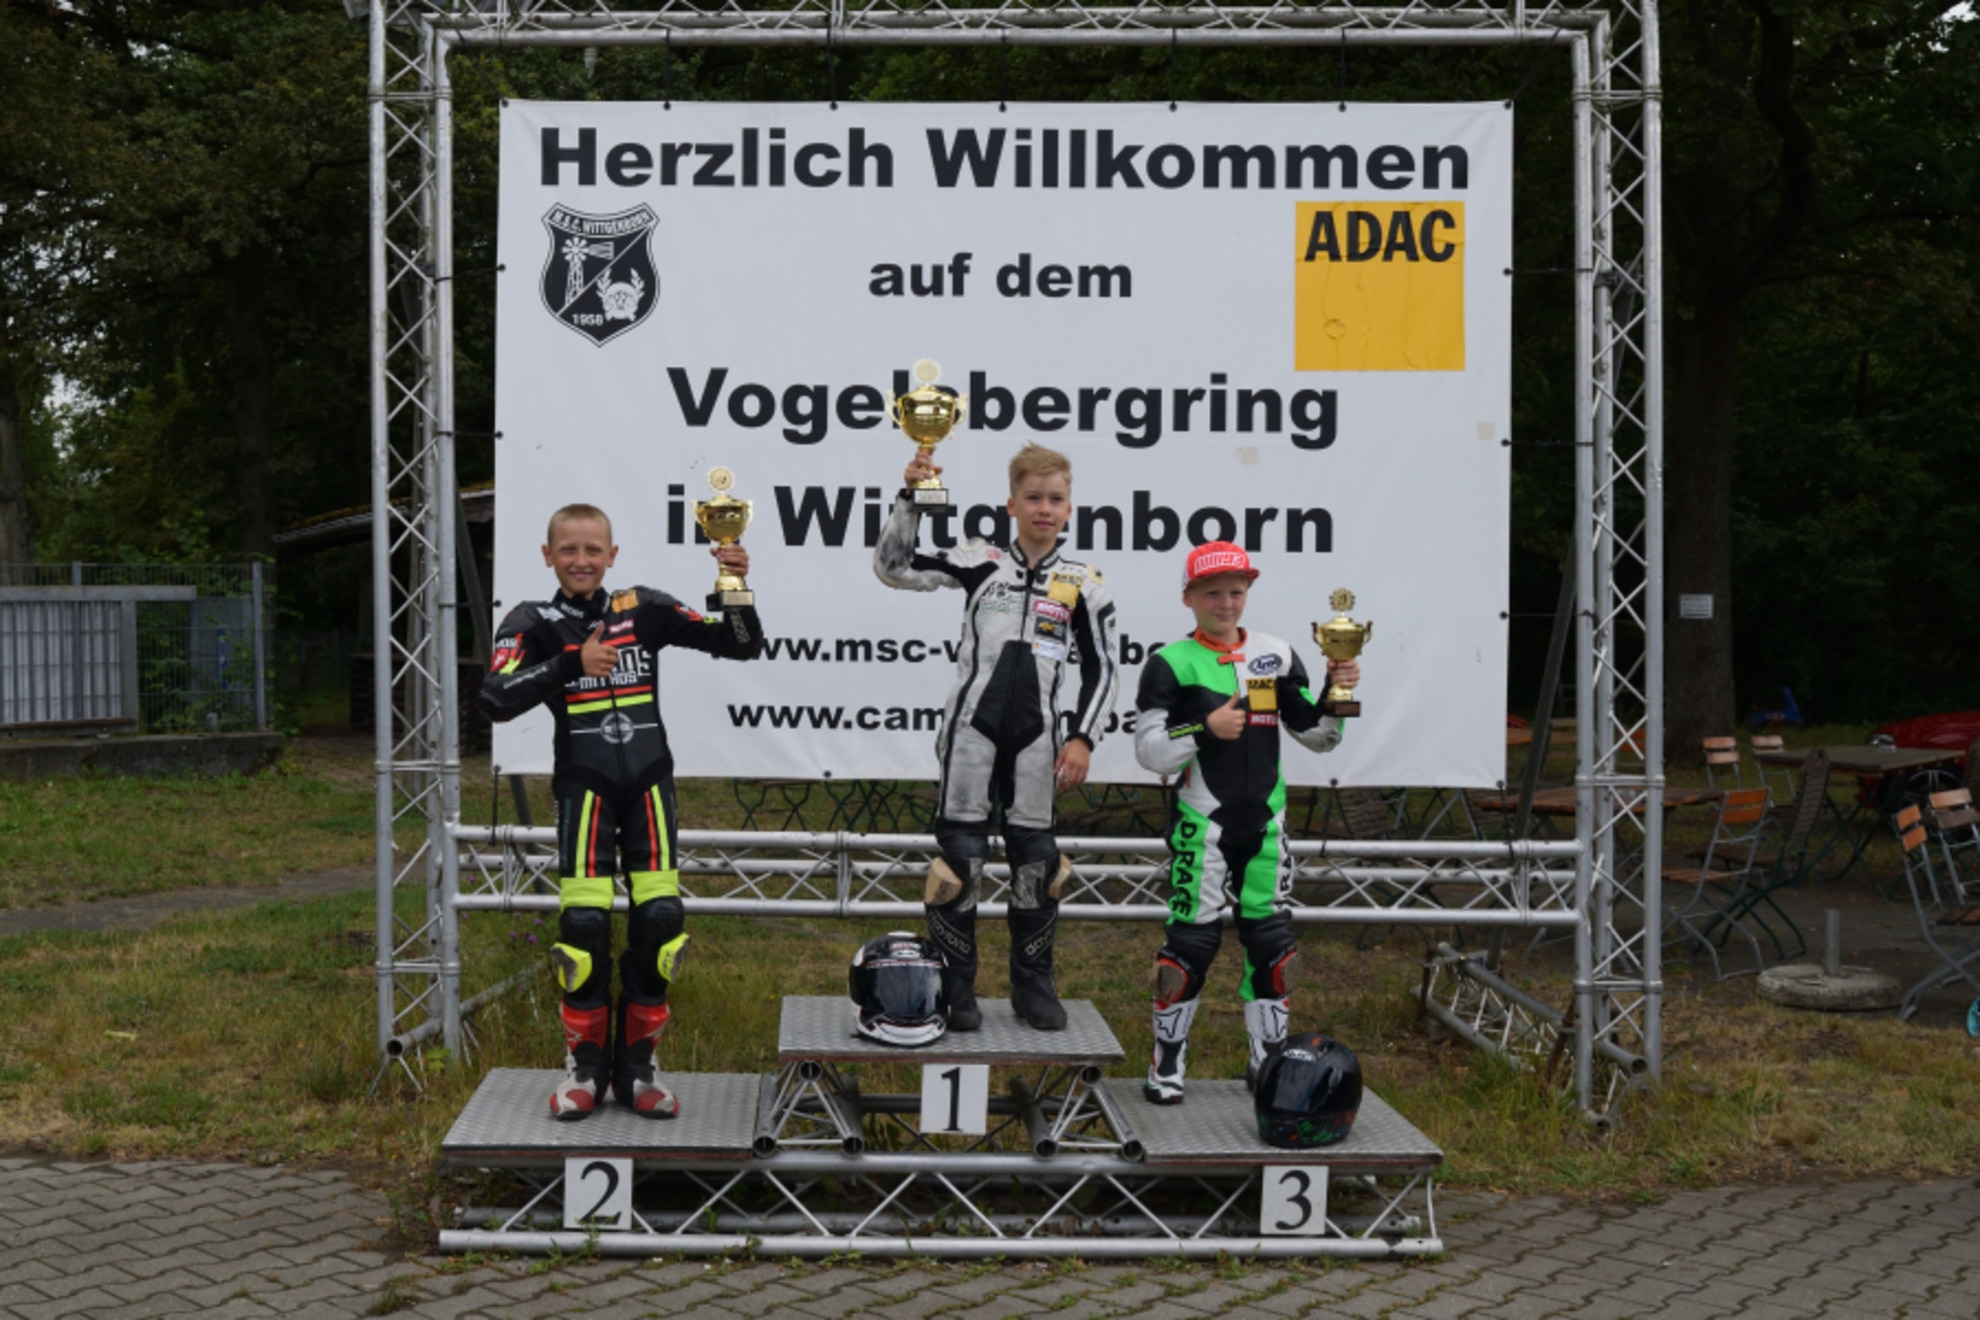 Wittgenborn - V4 ADAC Mini Bike Cup - Einsteiger